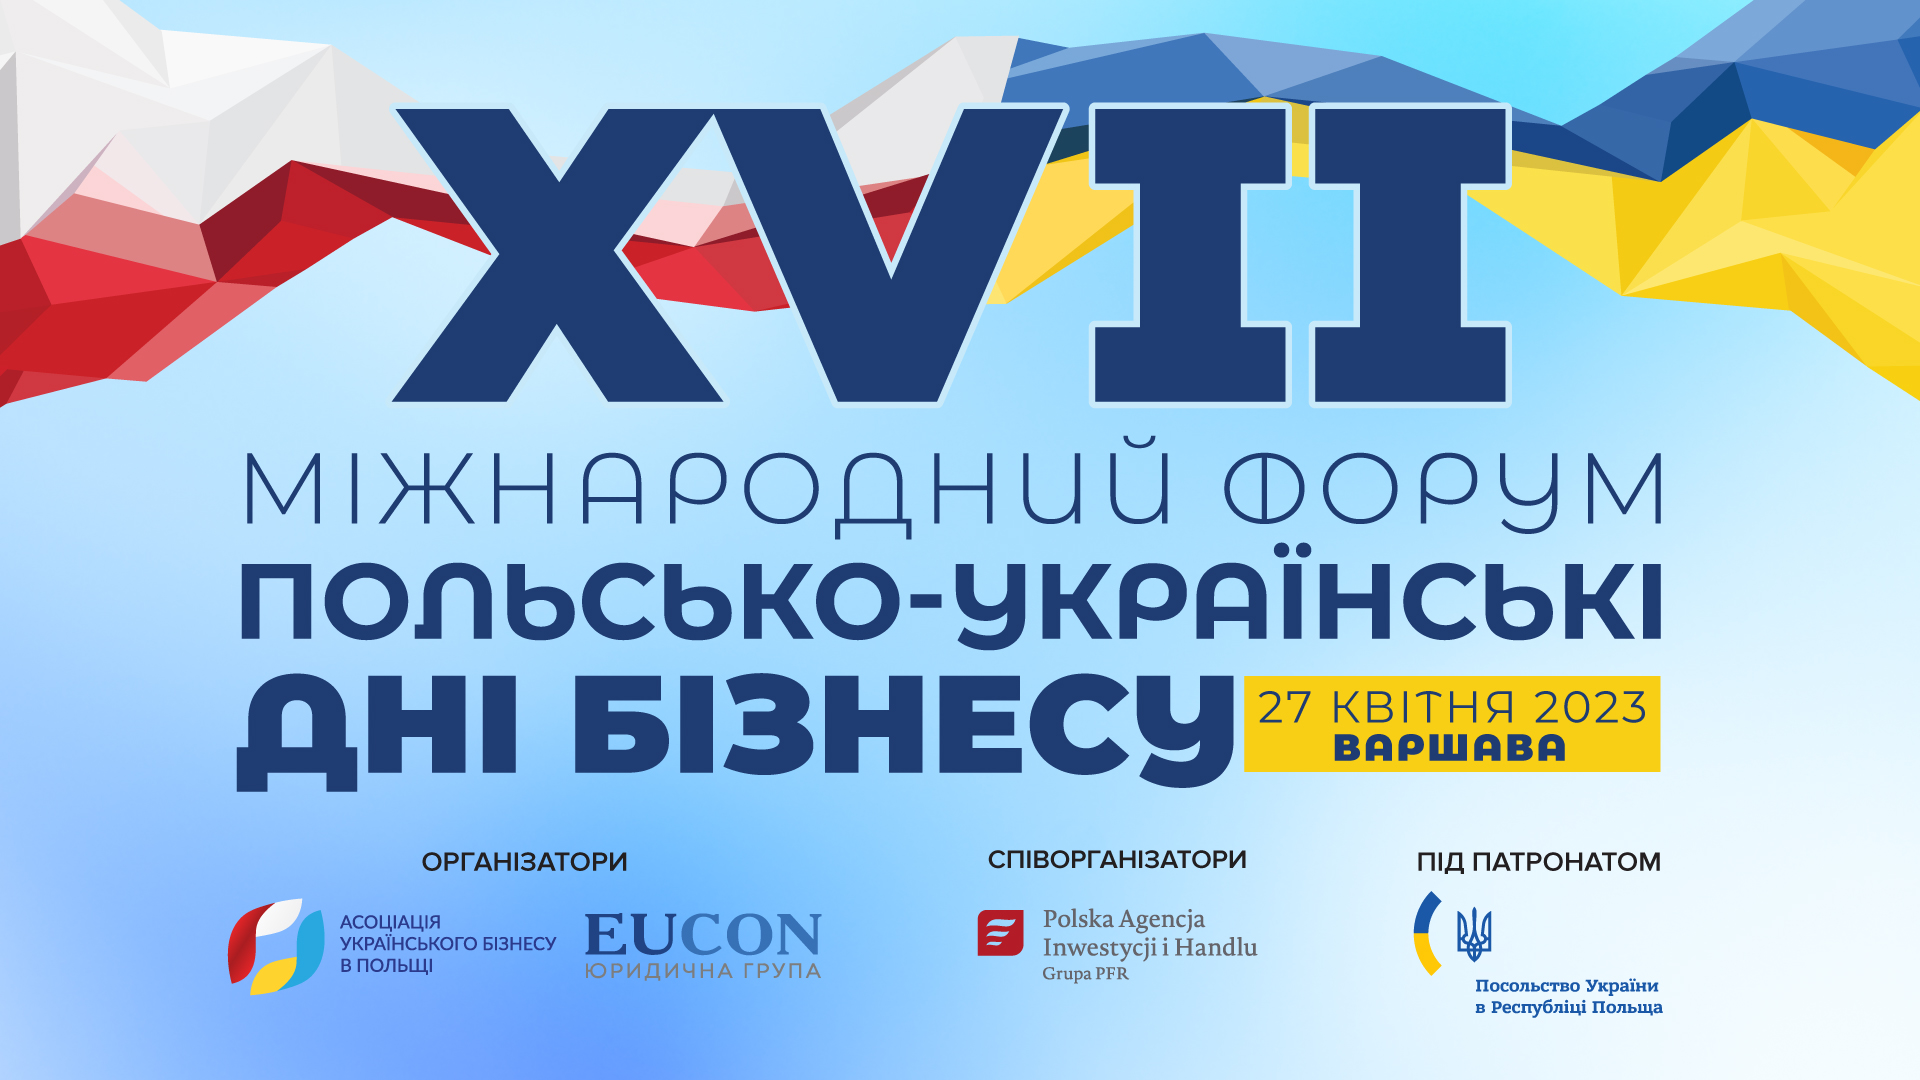 27 квітня у Варшаві відбудеться XVII Міжнародний форум «Польсько-українські дні бізнесу»